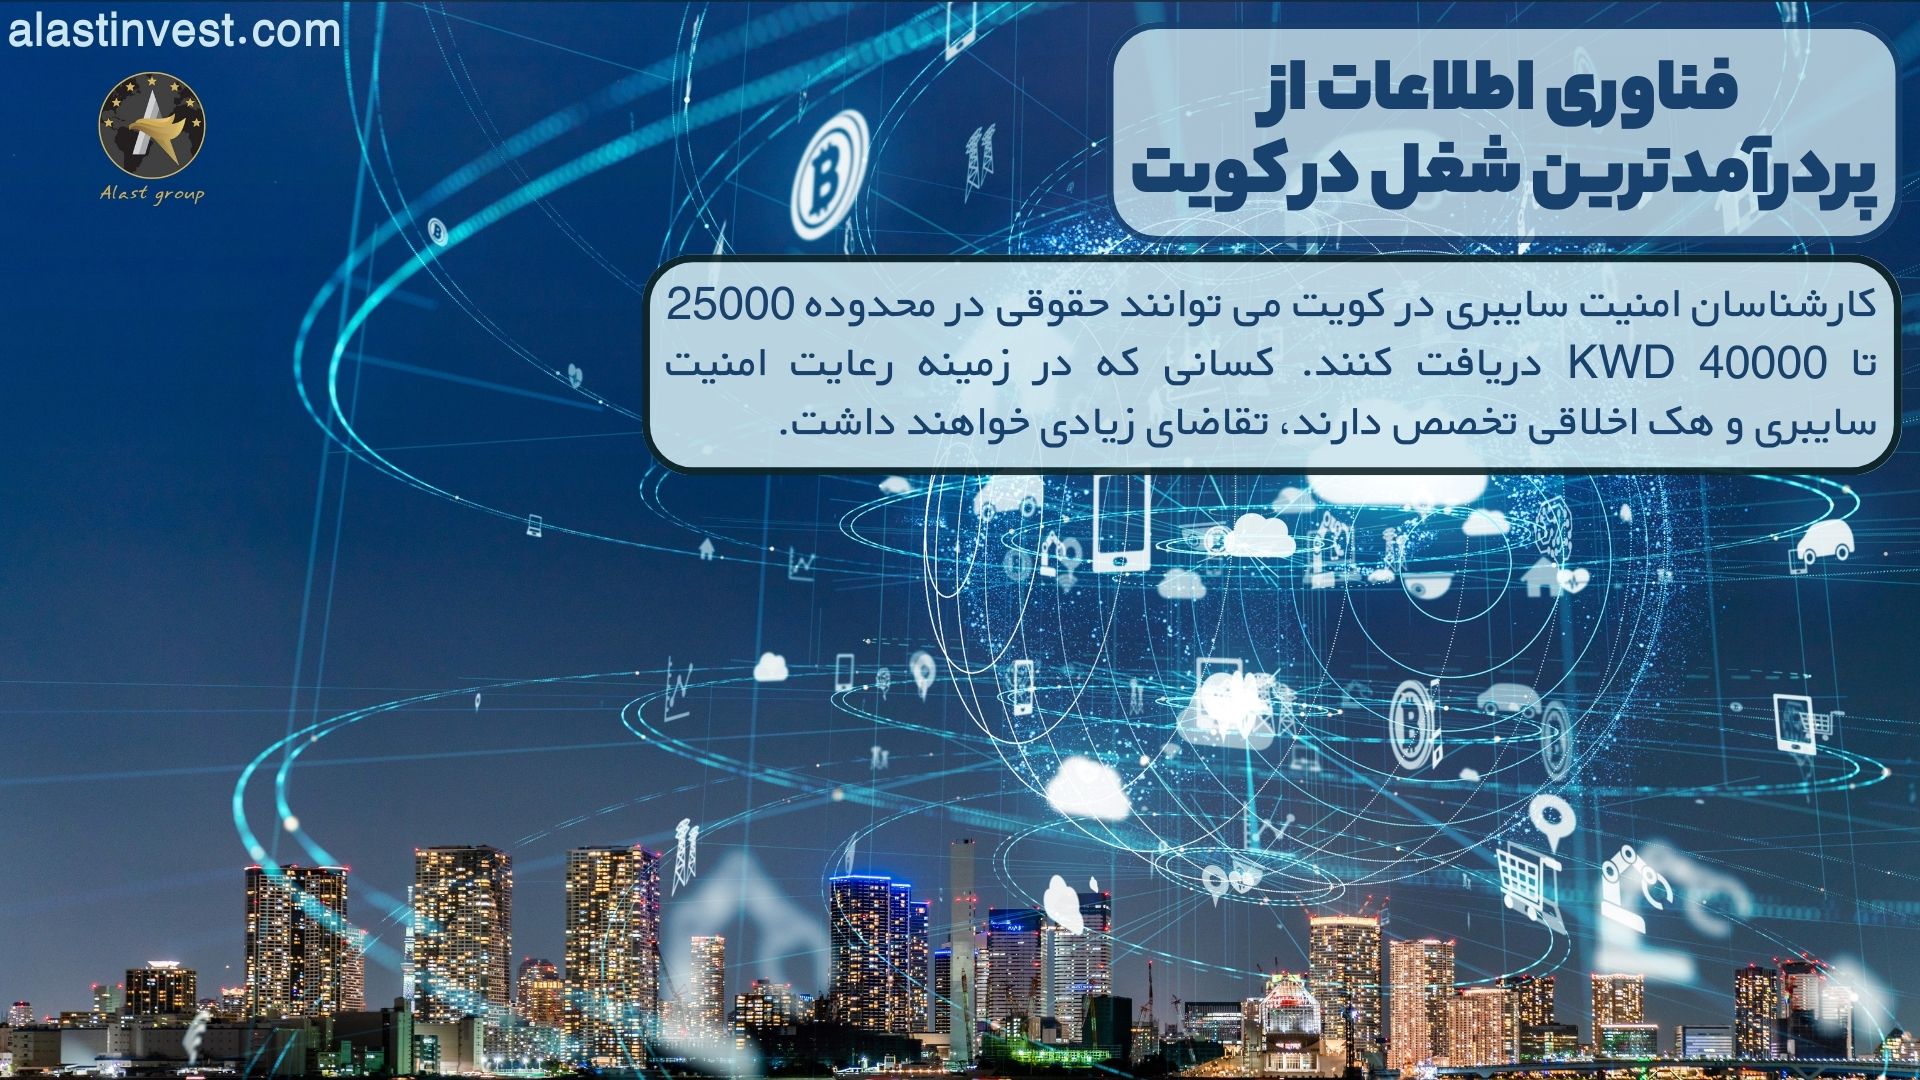 فناوری اطلاعات از پردرآمدترین شغل در کویت